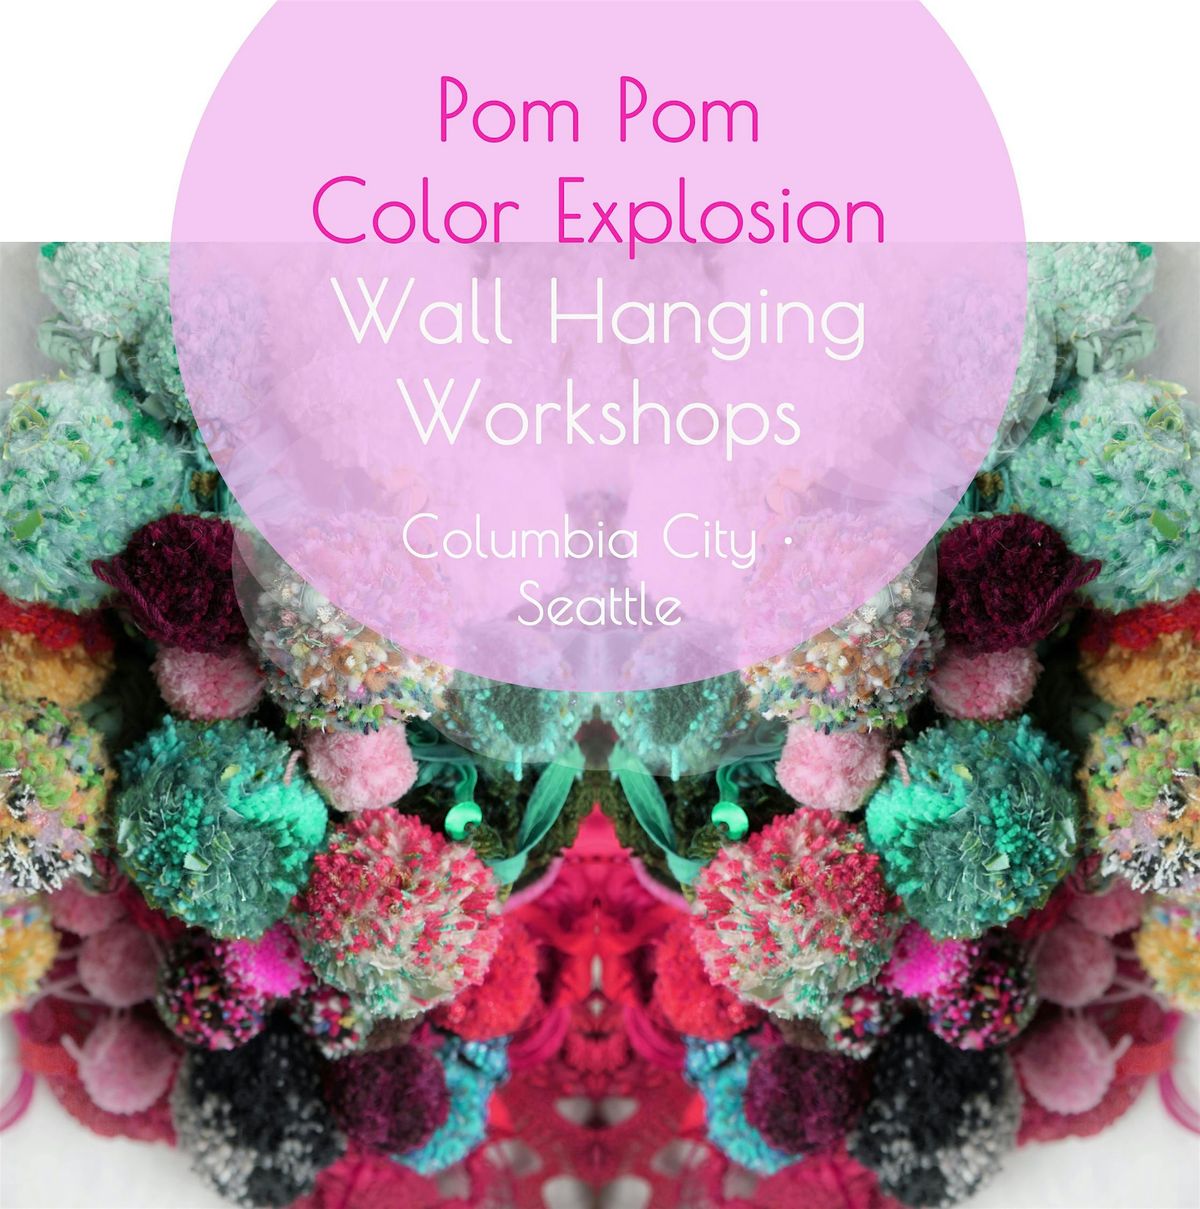 Pom Pom Color Explosion Wall Hanging Workshops